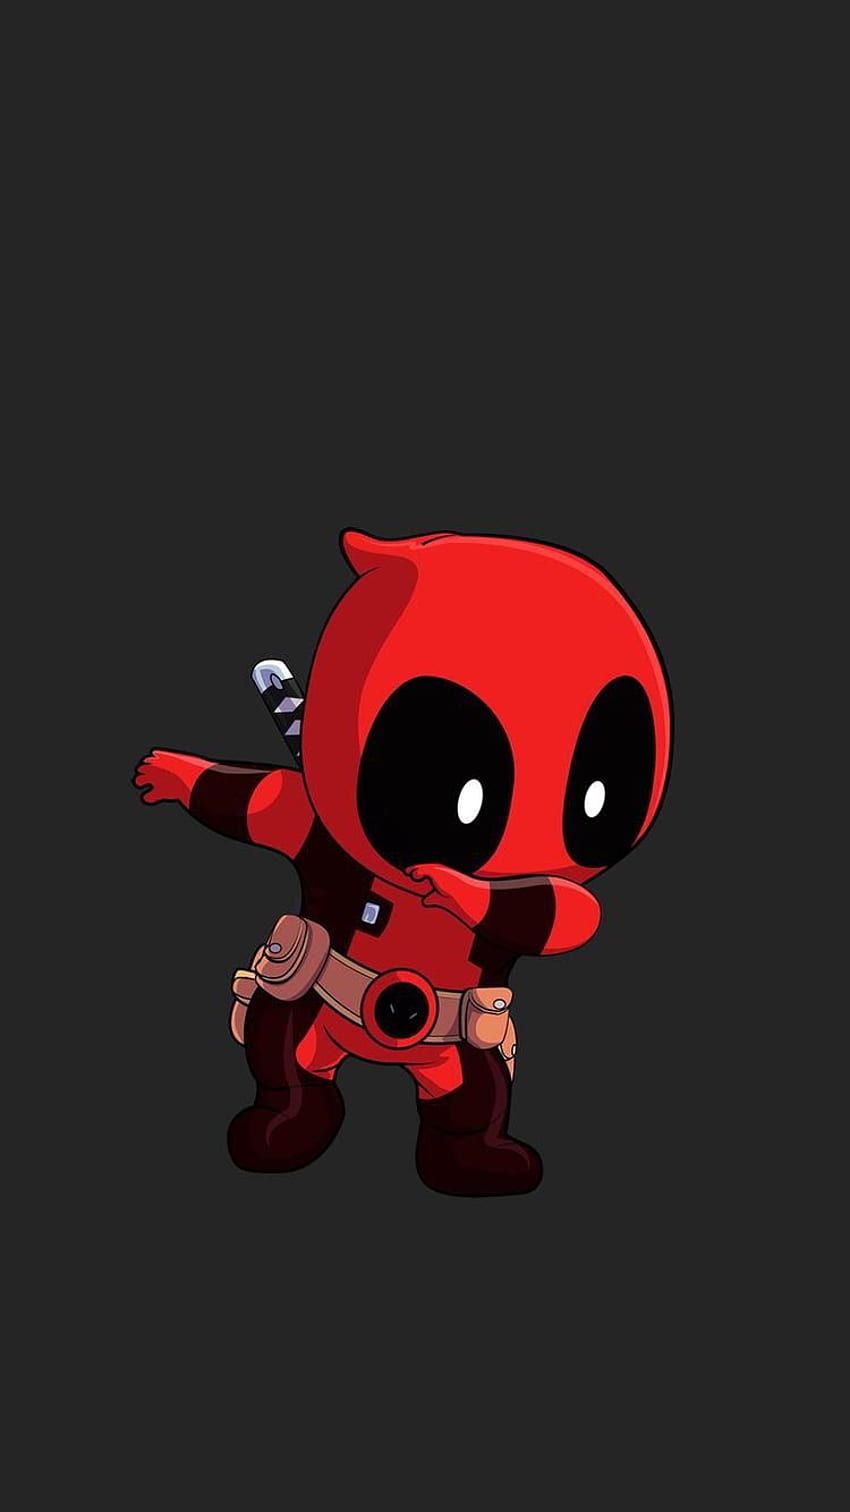 Bạn là fan hâm mộ Deadpool và đang tìm kiếm món đồ dùng hằng ngày đem theo mình? Đừng bỏ lỡ chiếc móc khóa Deadpool Chibi thông minh, dễ thương và siêu bền bỉ. Hãy treo nó ở đâu đó trên túi xách hoặc chìa khóa của bạn và thể hiện sự nghiêm túc của mình với vẻ ngoài đáng yêu của Deadpool Chibi!